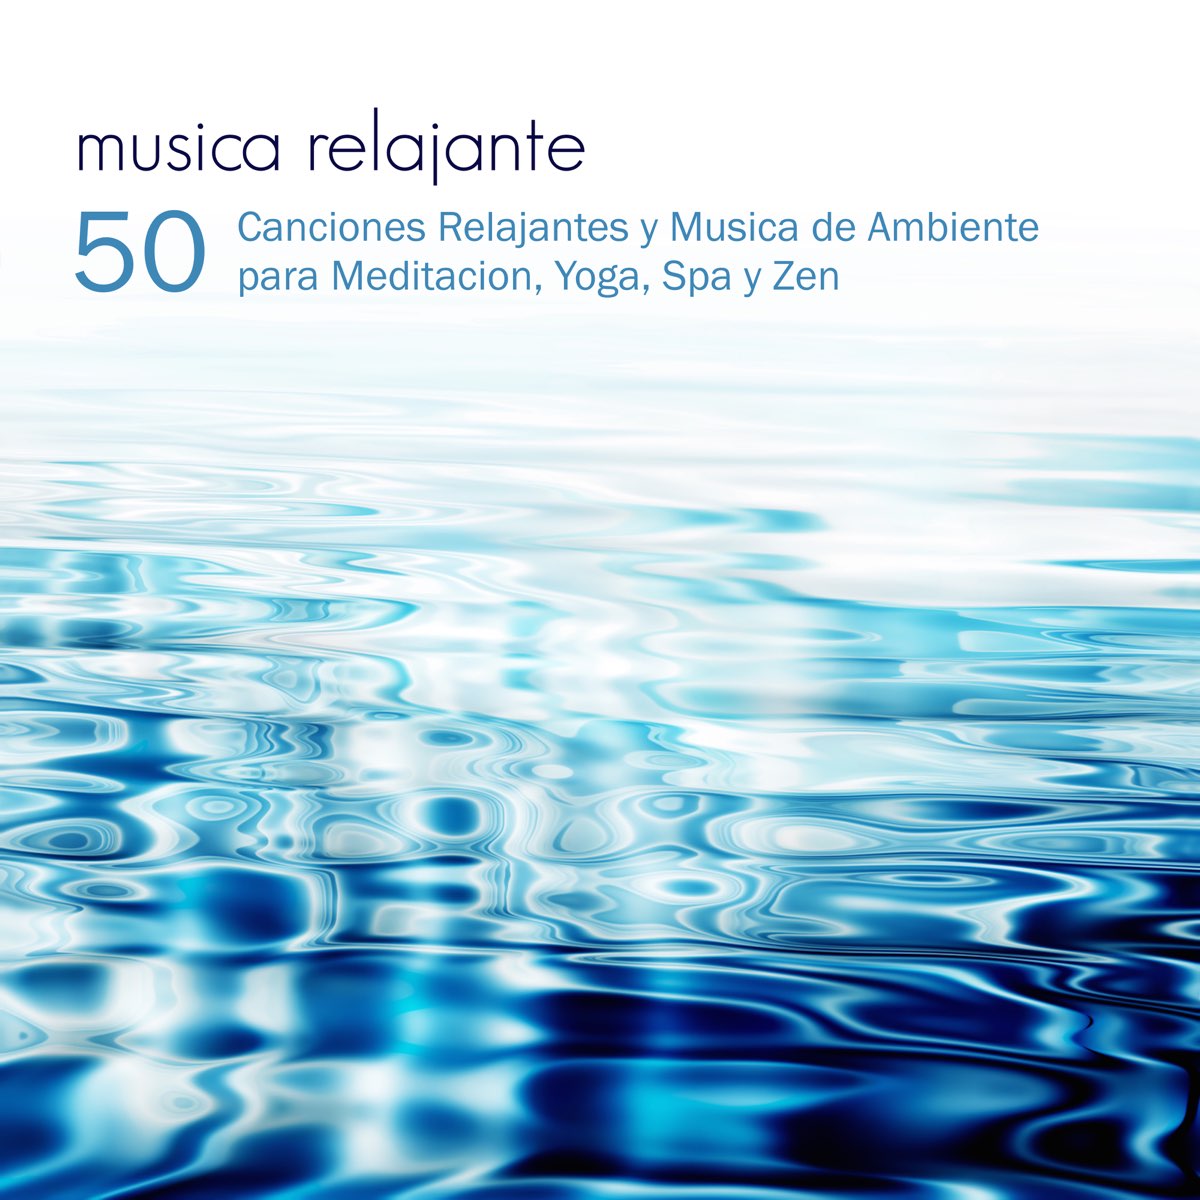 Música Relajante - 50 Canciones Relajantes y Música de Ambiente para  Meditación, Yoga, Spa y Zen by Música relajante on Apple Music